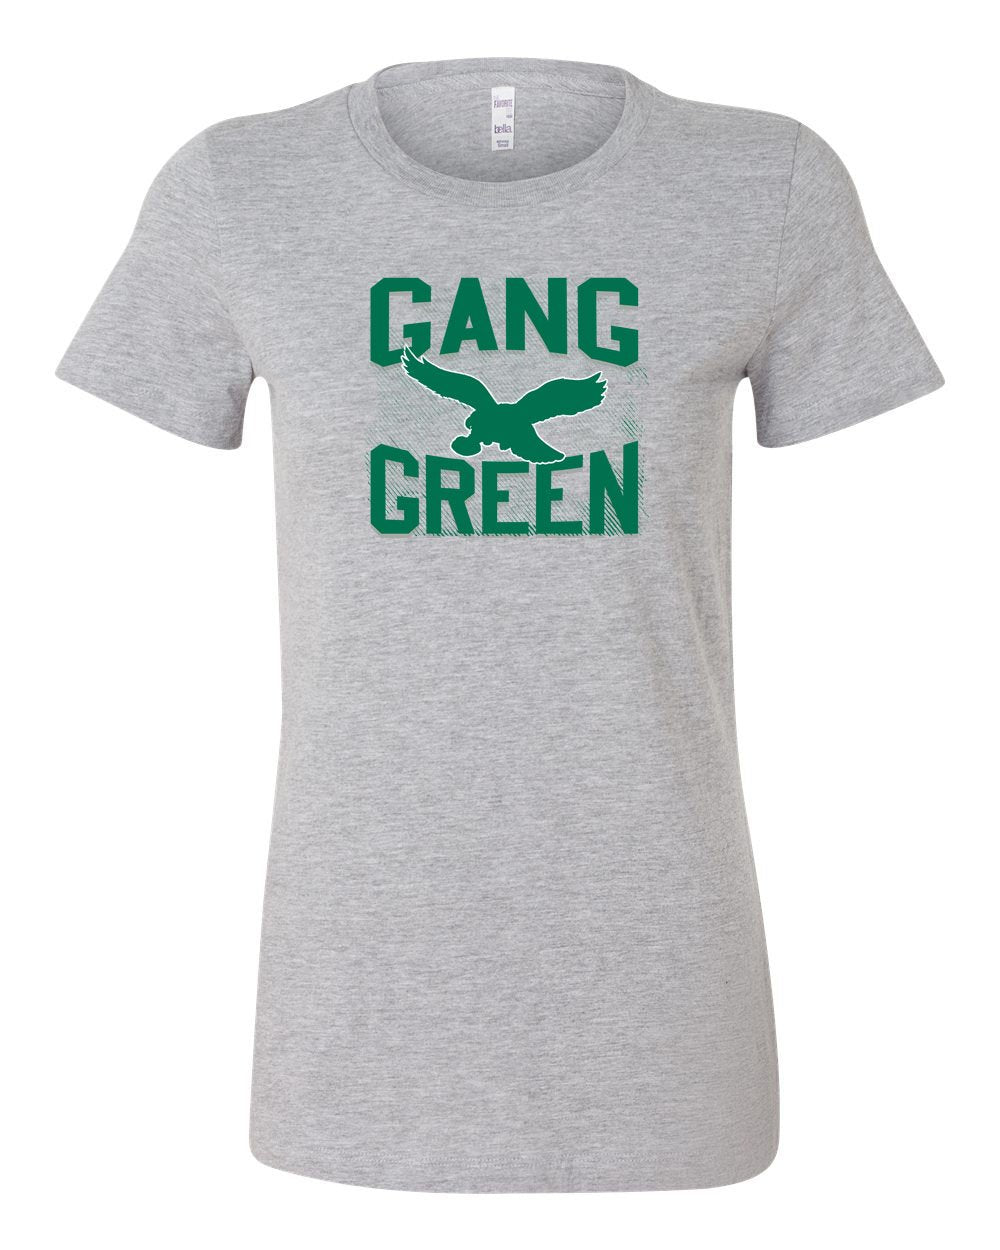 Gang Green LADIES Junior-Fit T-Shirt